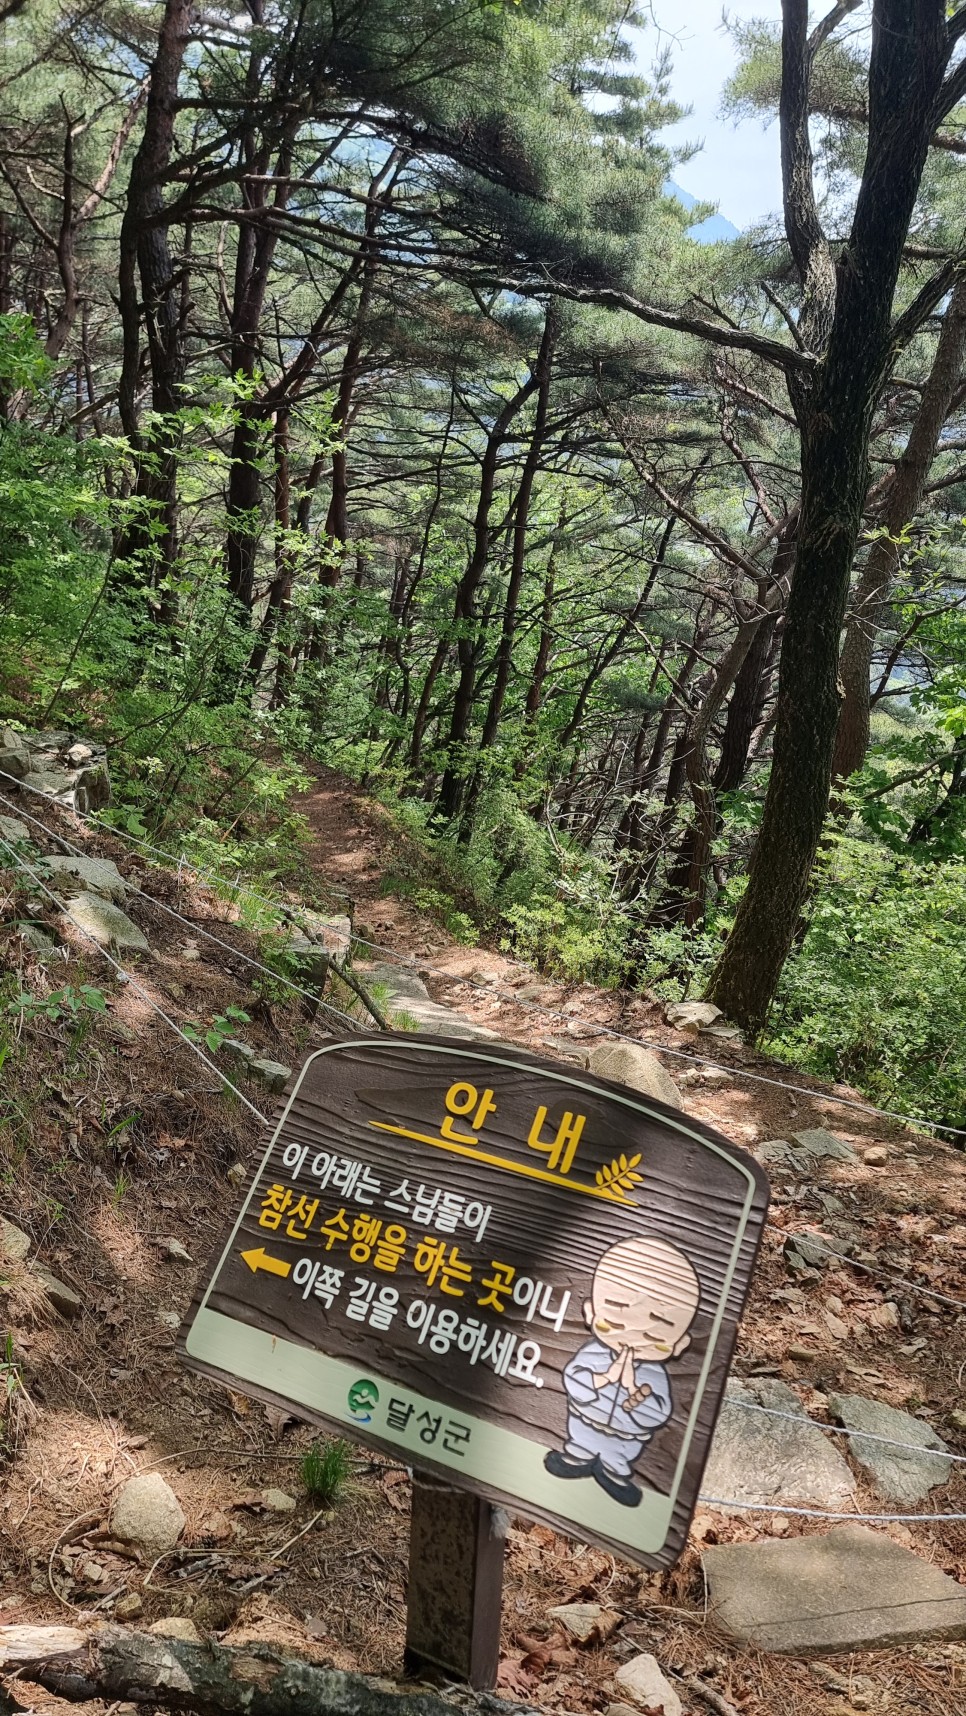 비슬산 등산, 도성암주차장 원점회귀 최단코스 산행